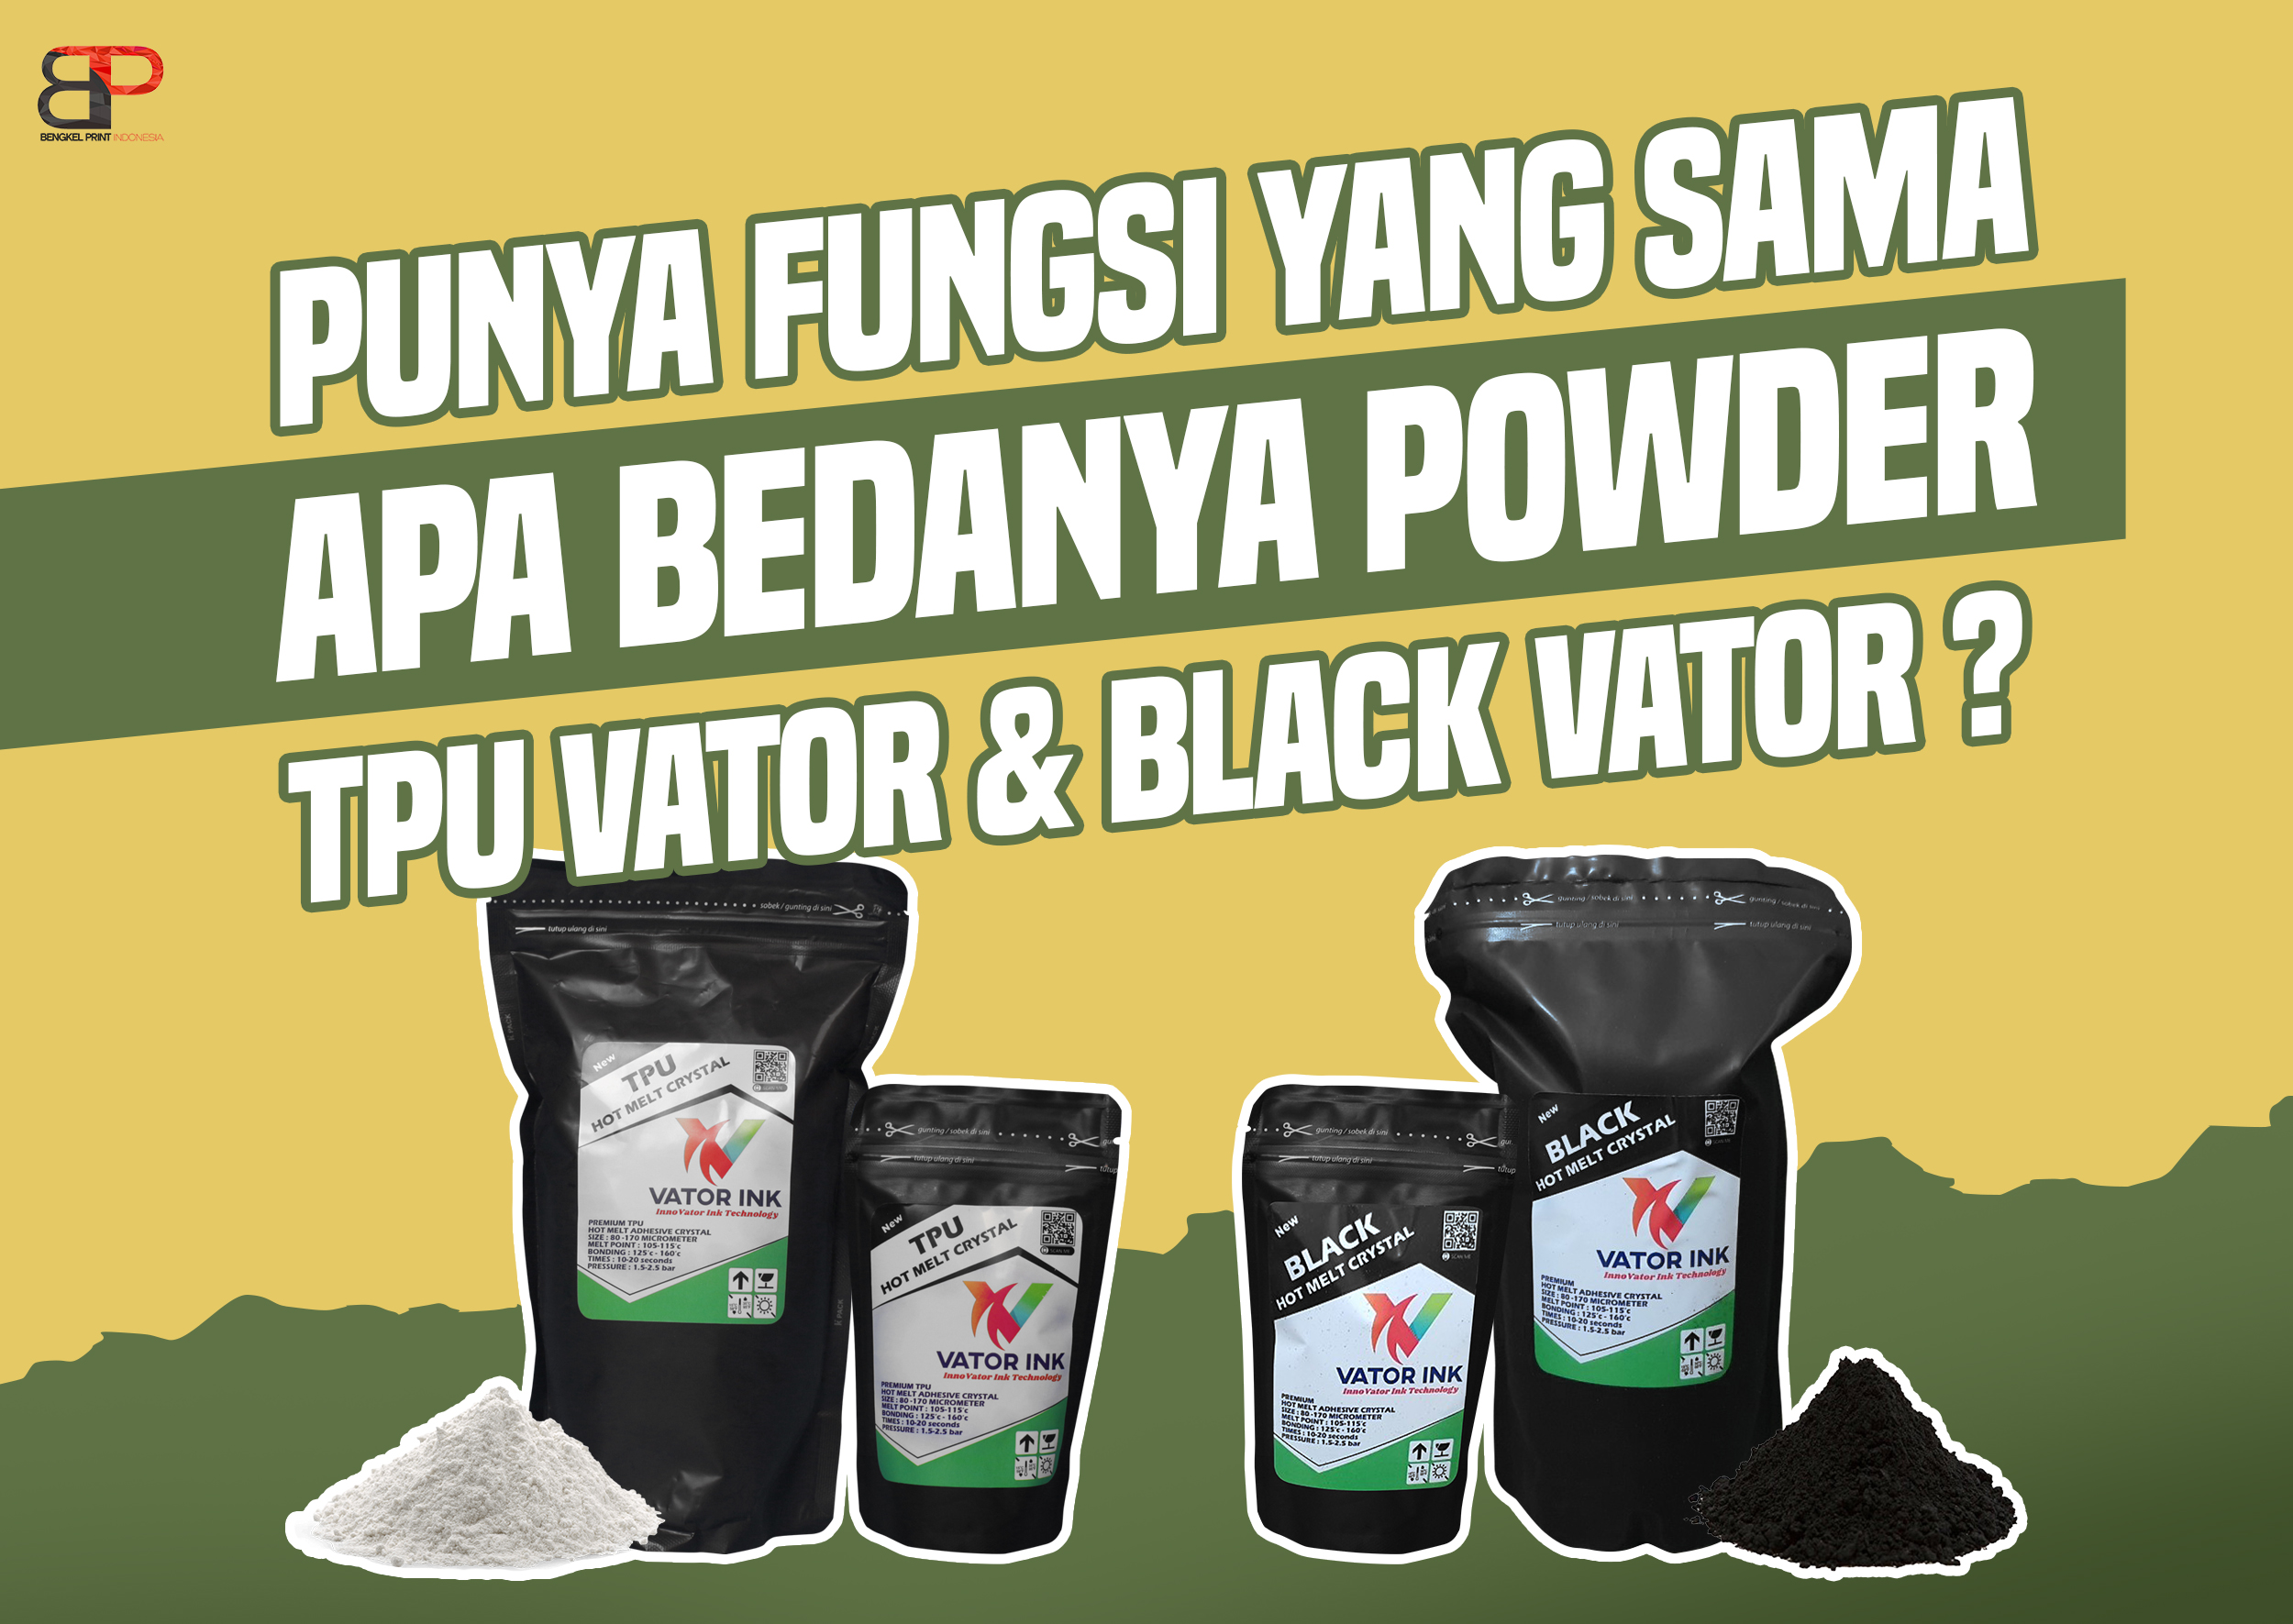 Mengenal perbedaan powder TPU vator dan Black vator